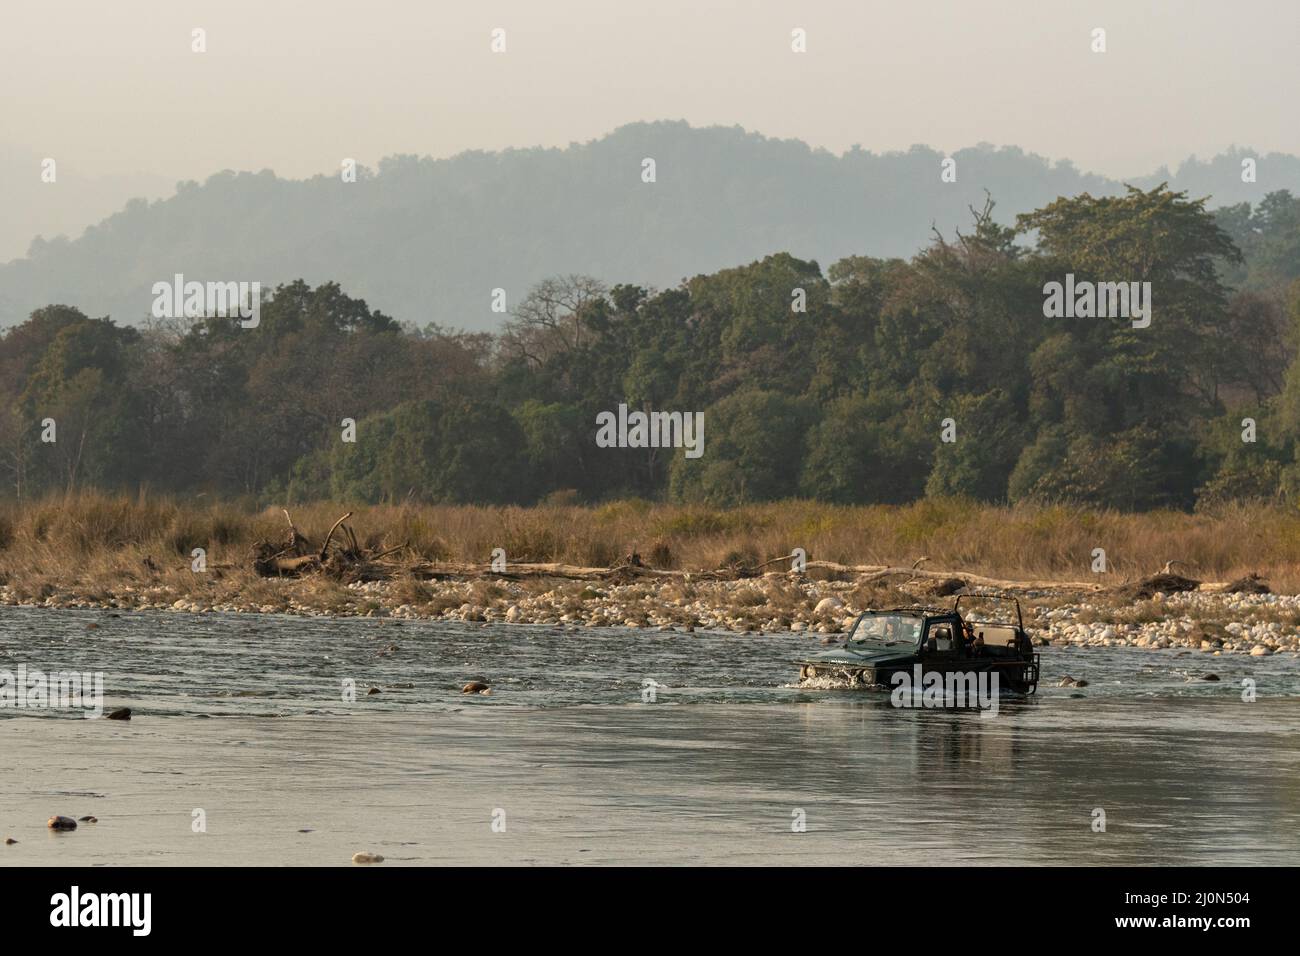 Jim corbett Nationalpark, Ramnagar, Uttarakhand, Indien - 7. Februar 2022 - Wildtiersafari oder landschaftlich reizvolle Wildfahrt Zigeuner oder Jeep Hälfte im Flusswasser Stockfoto